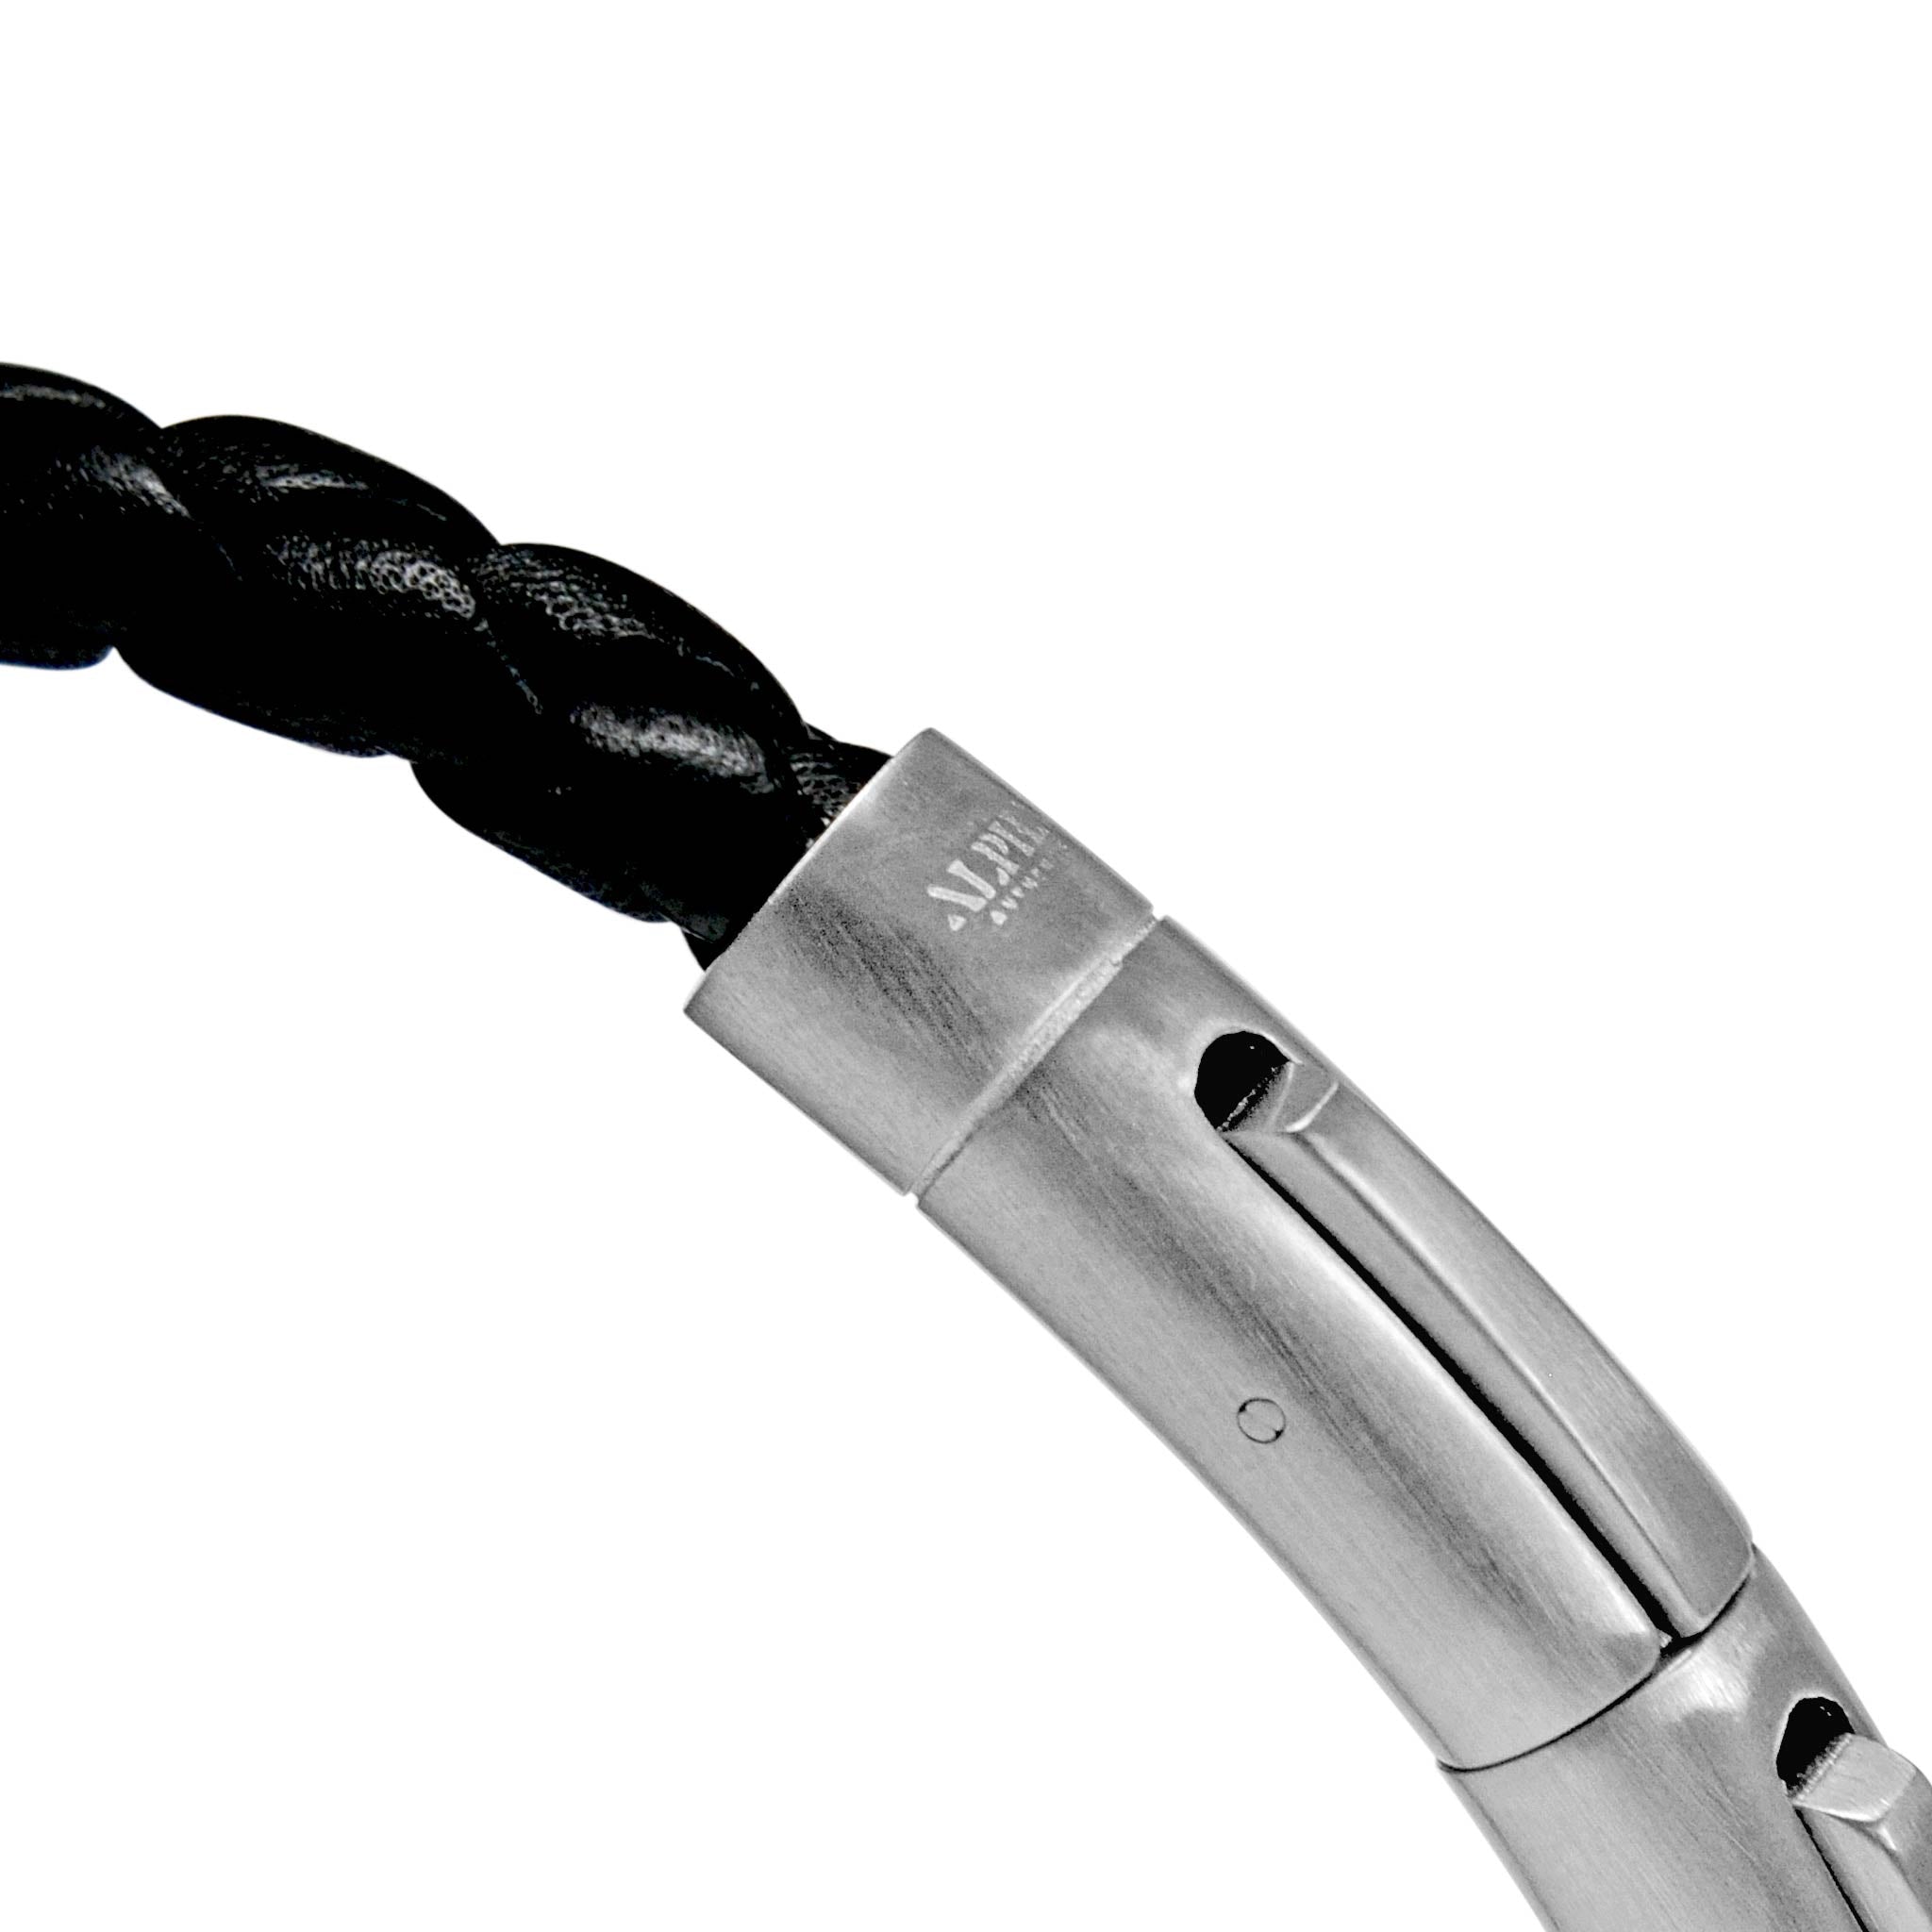 Phantom black leather stainless steel bracelet | ALPHA™ mens